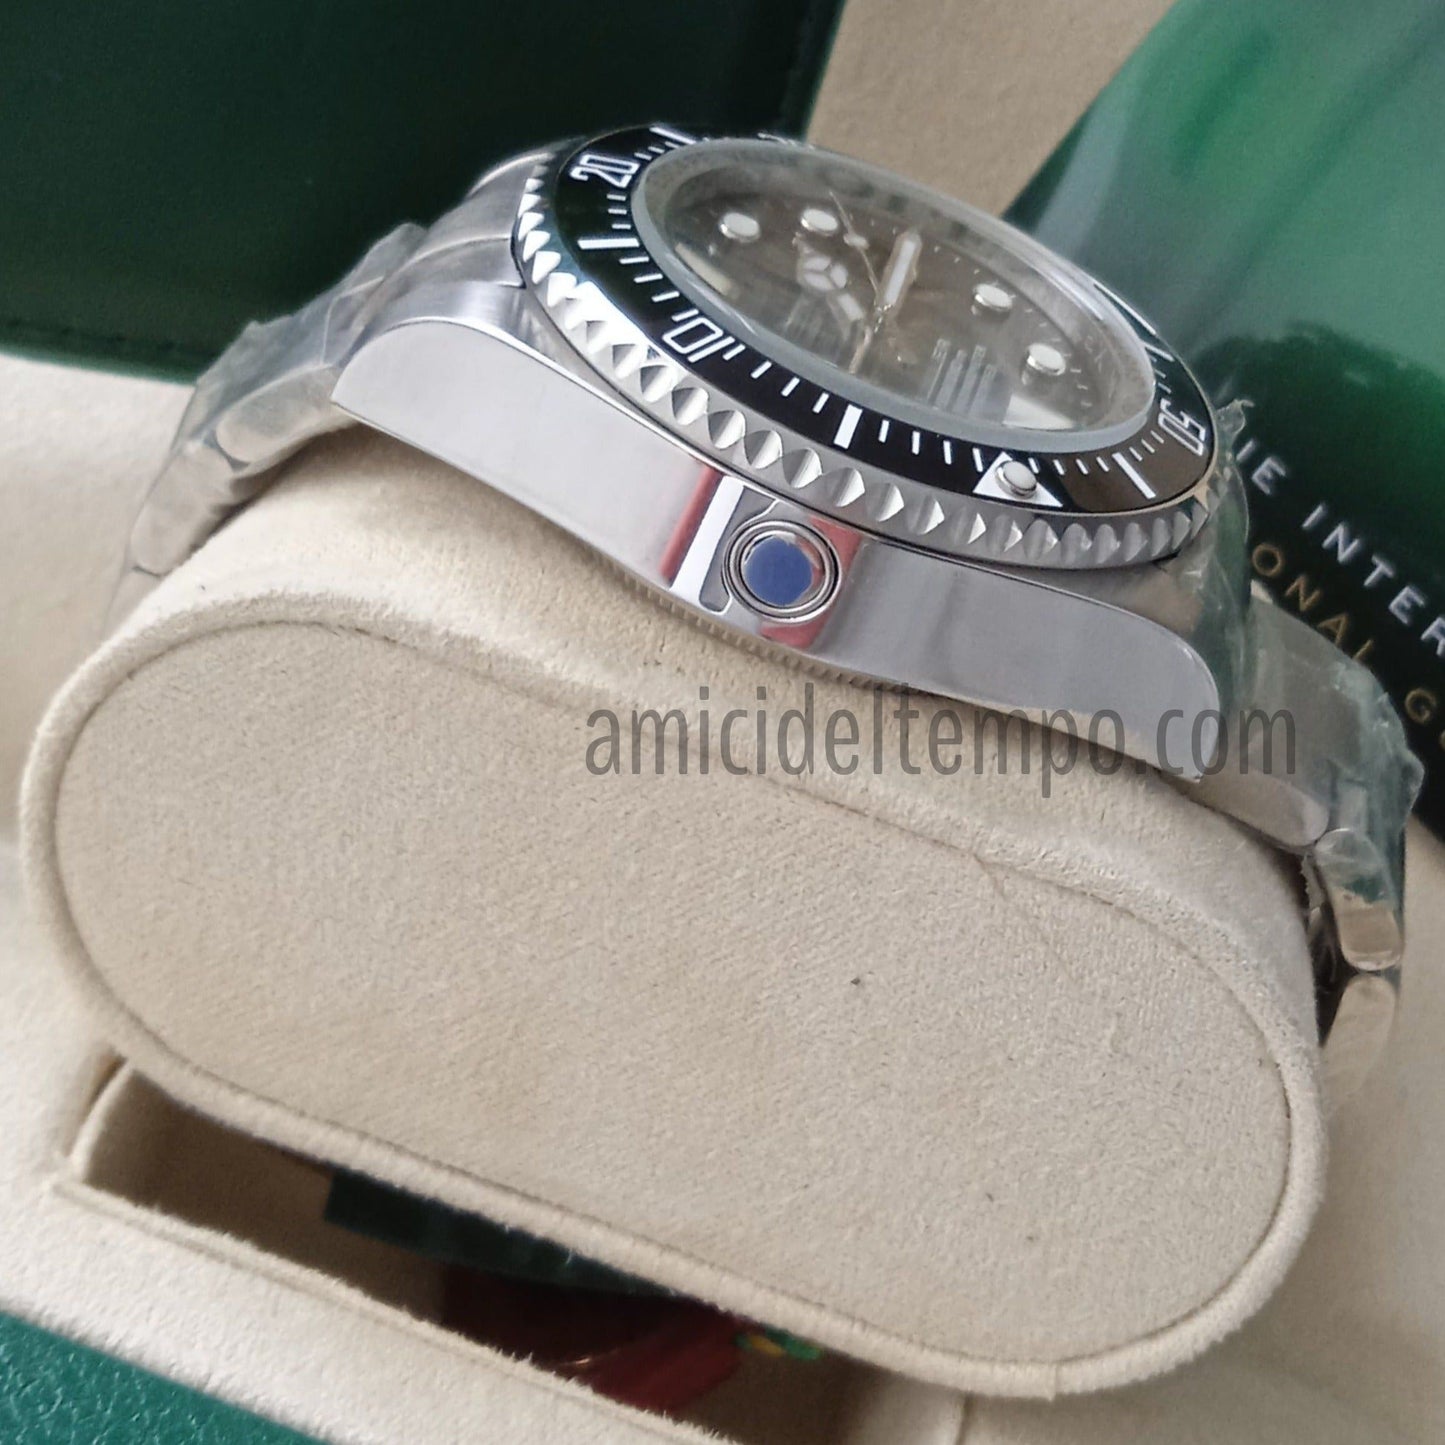 Rolex replica Deepsea Sea-Dweller 116660 black dial orologio replica | repliche rolex | Amici del Tempo